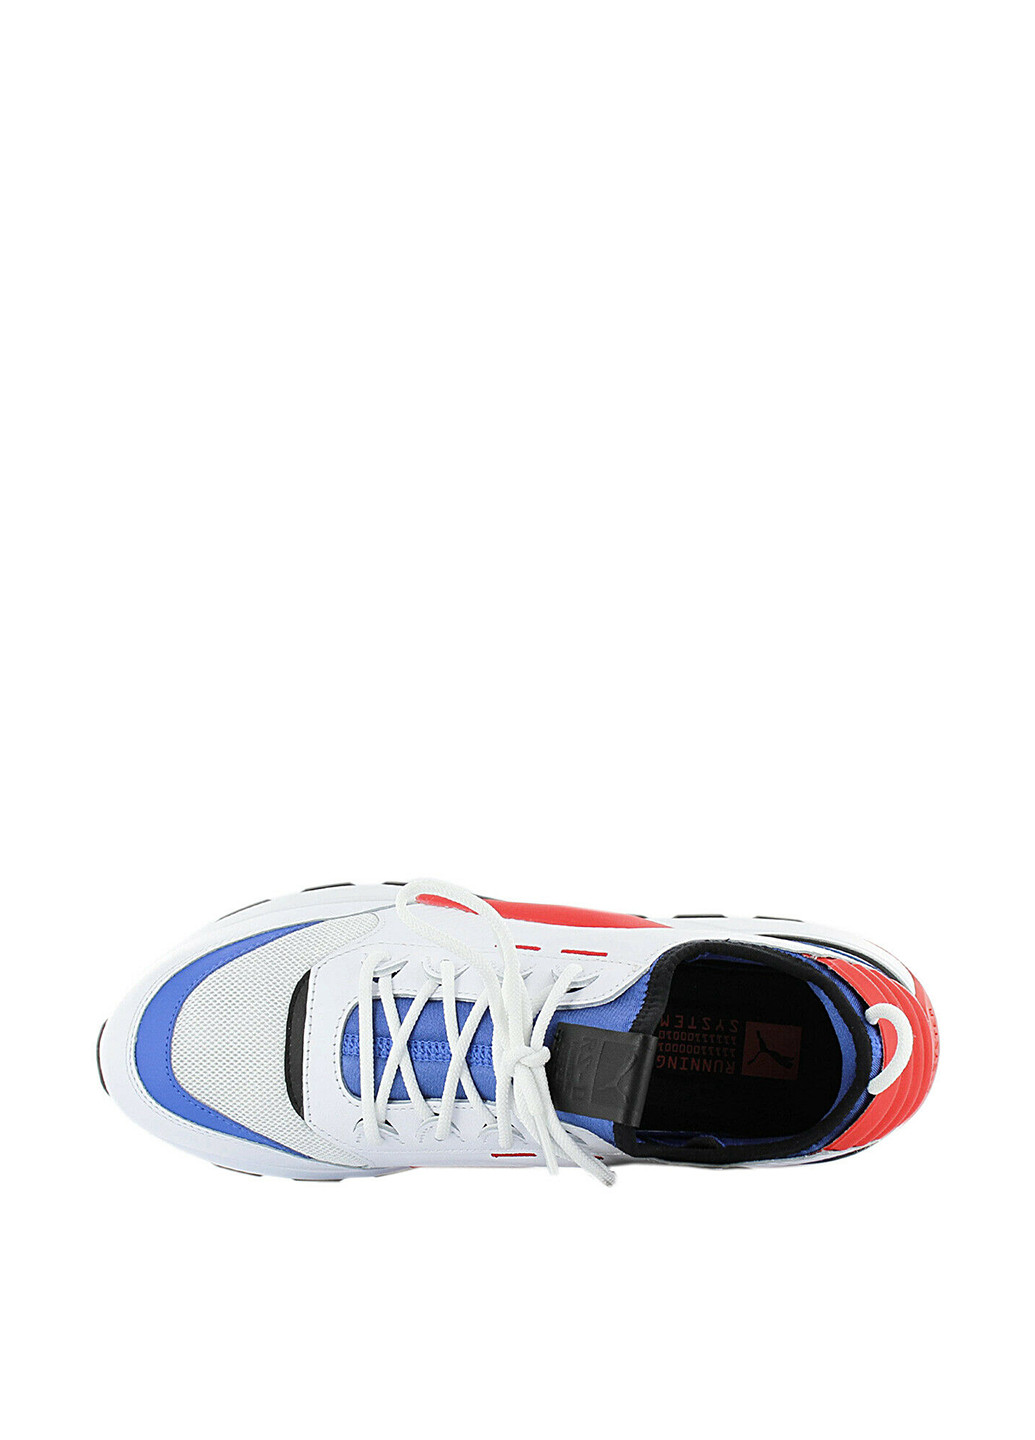 Белые всесезонные кроссовки Puma RS-0 Sound